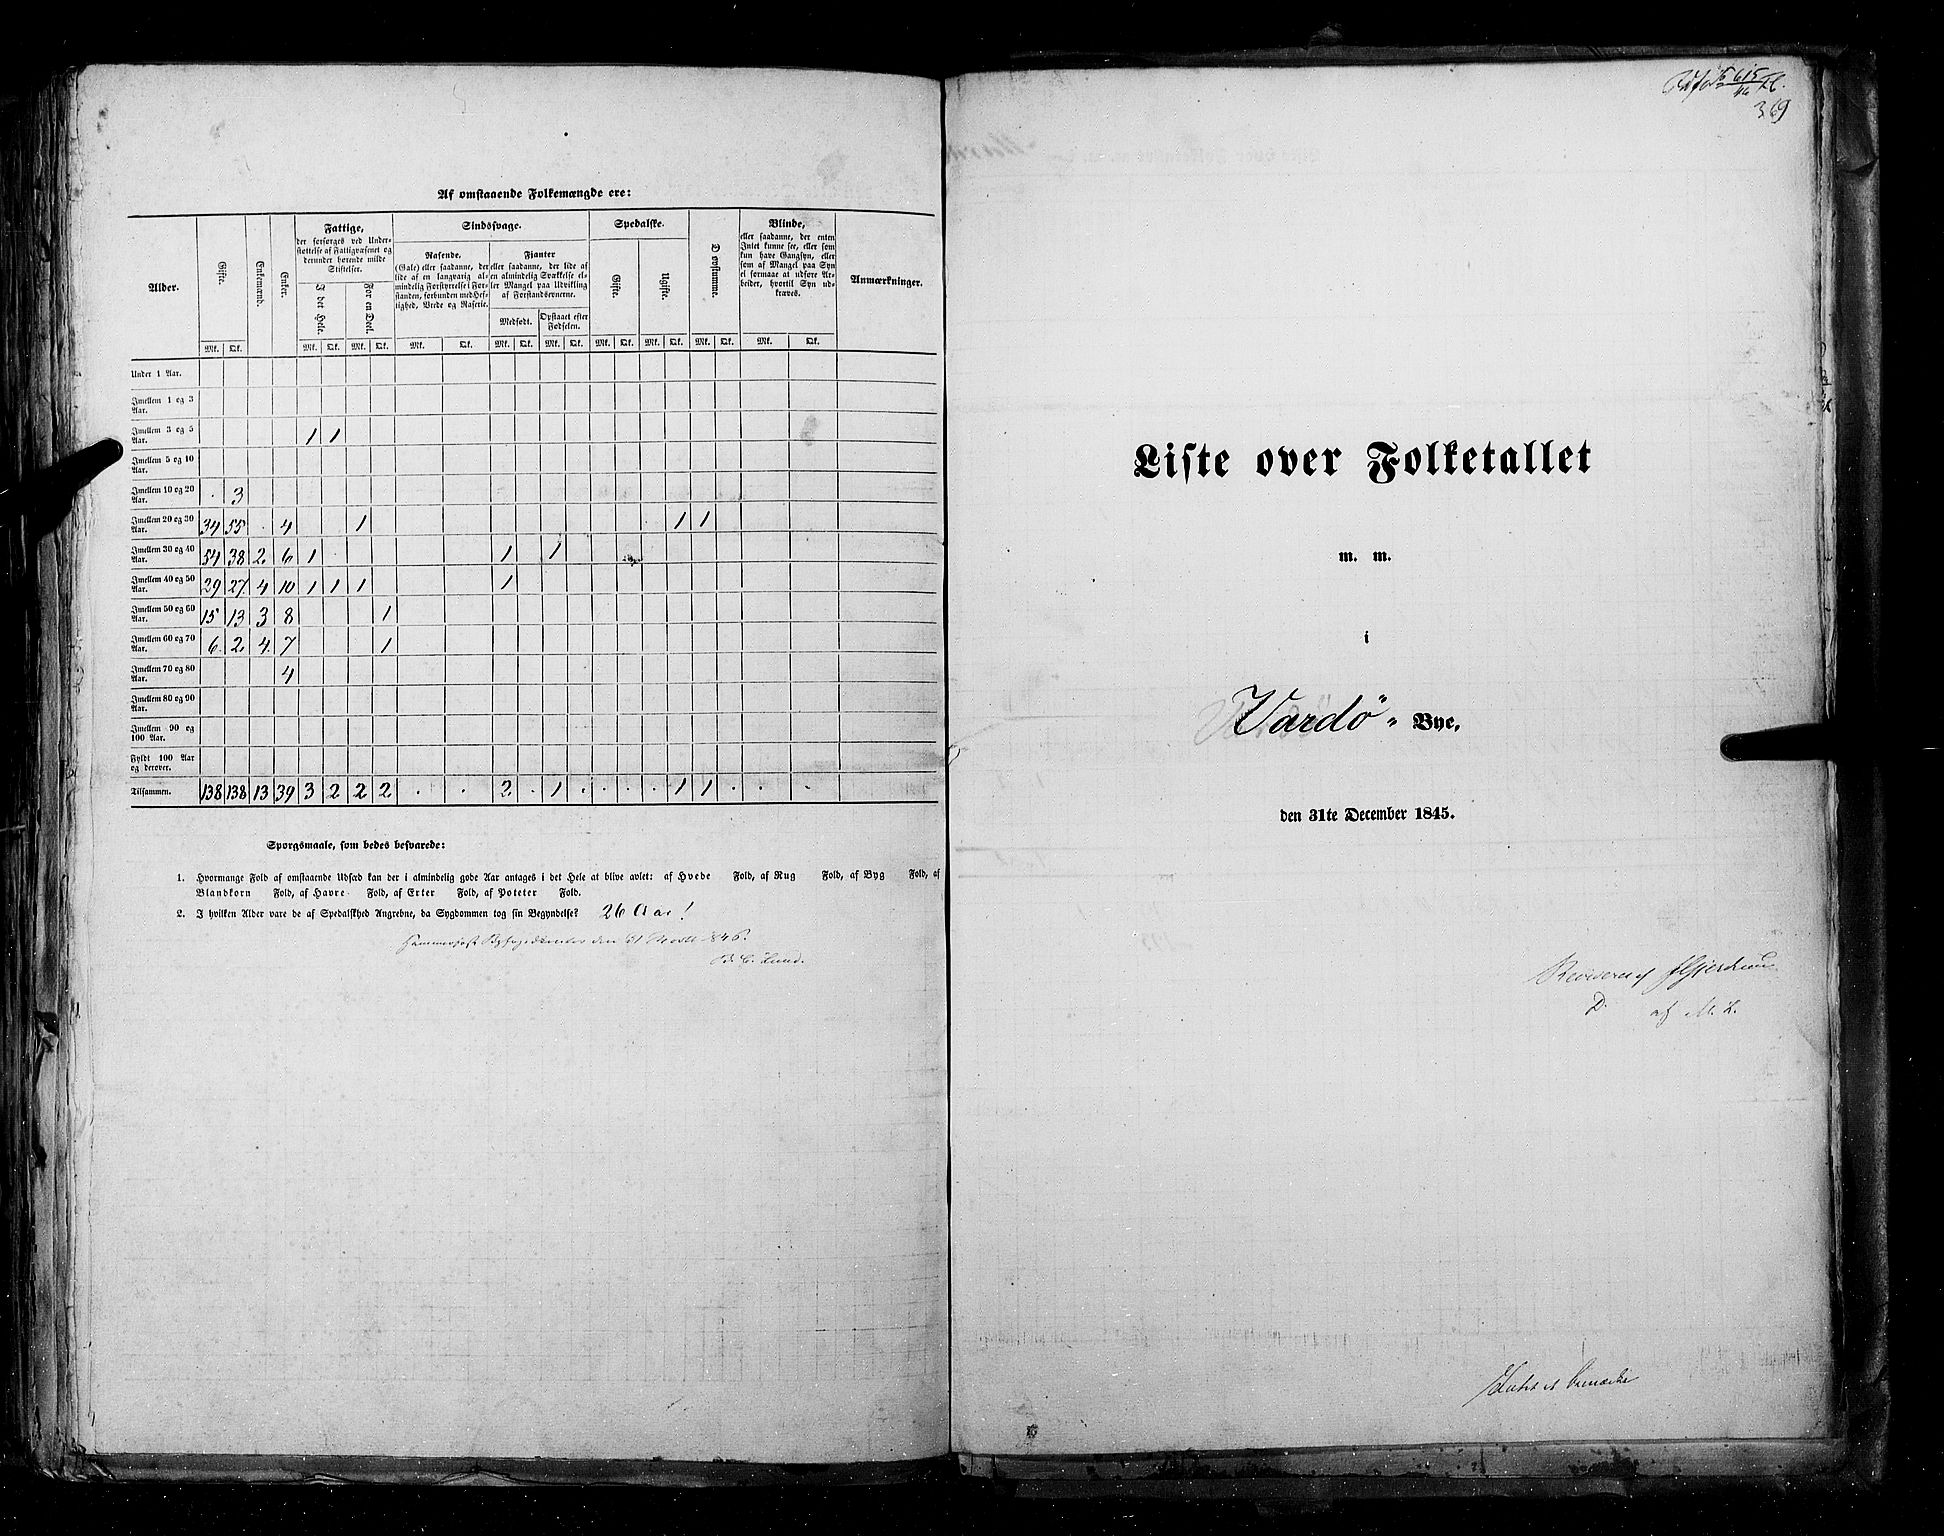 RA, Folketellingen 1845, bind 11: Kjøp- og ladesteder, 1845, s. 369